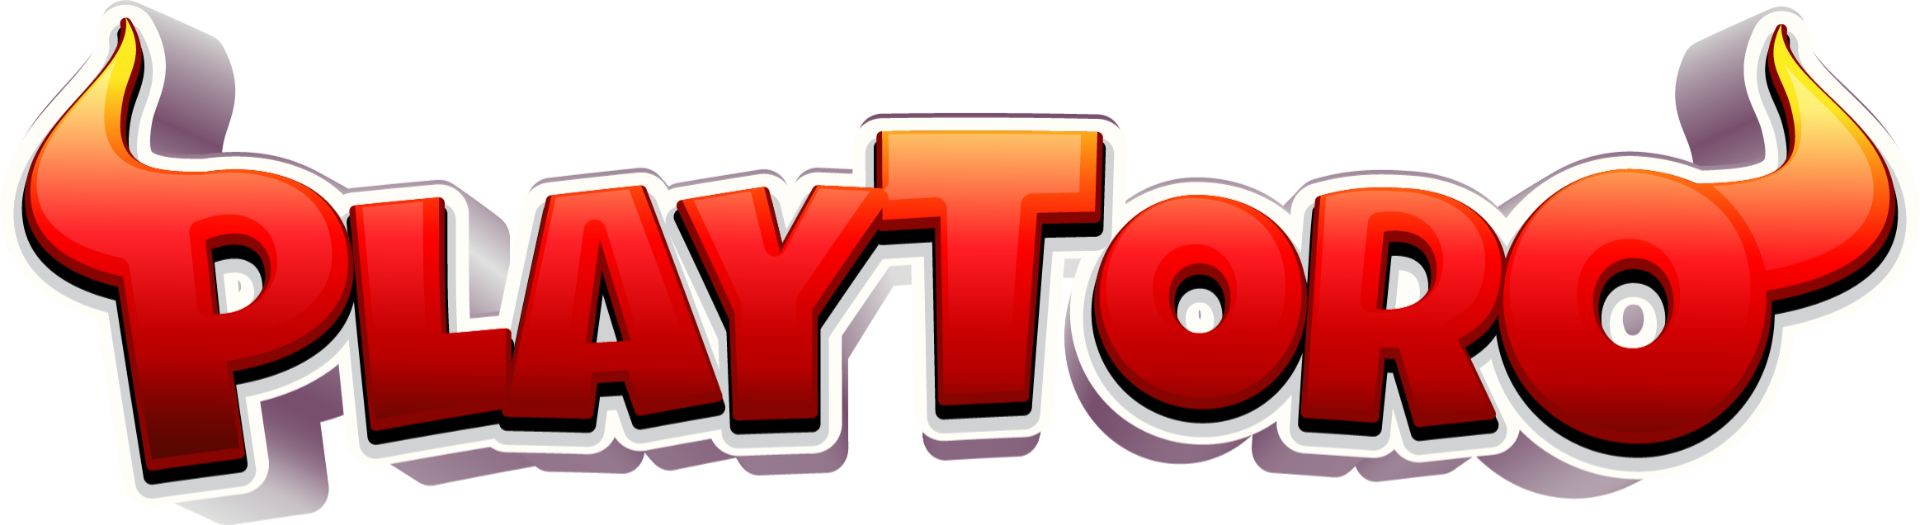 playtoro logo